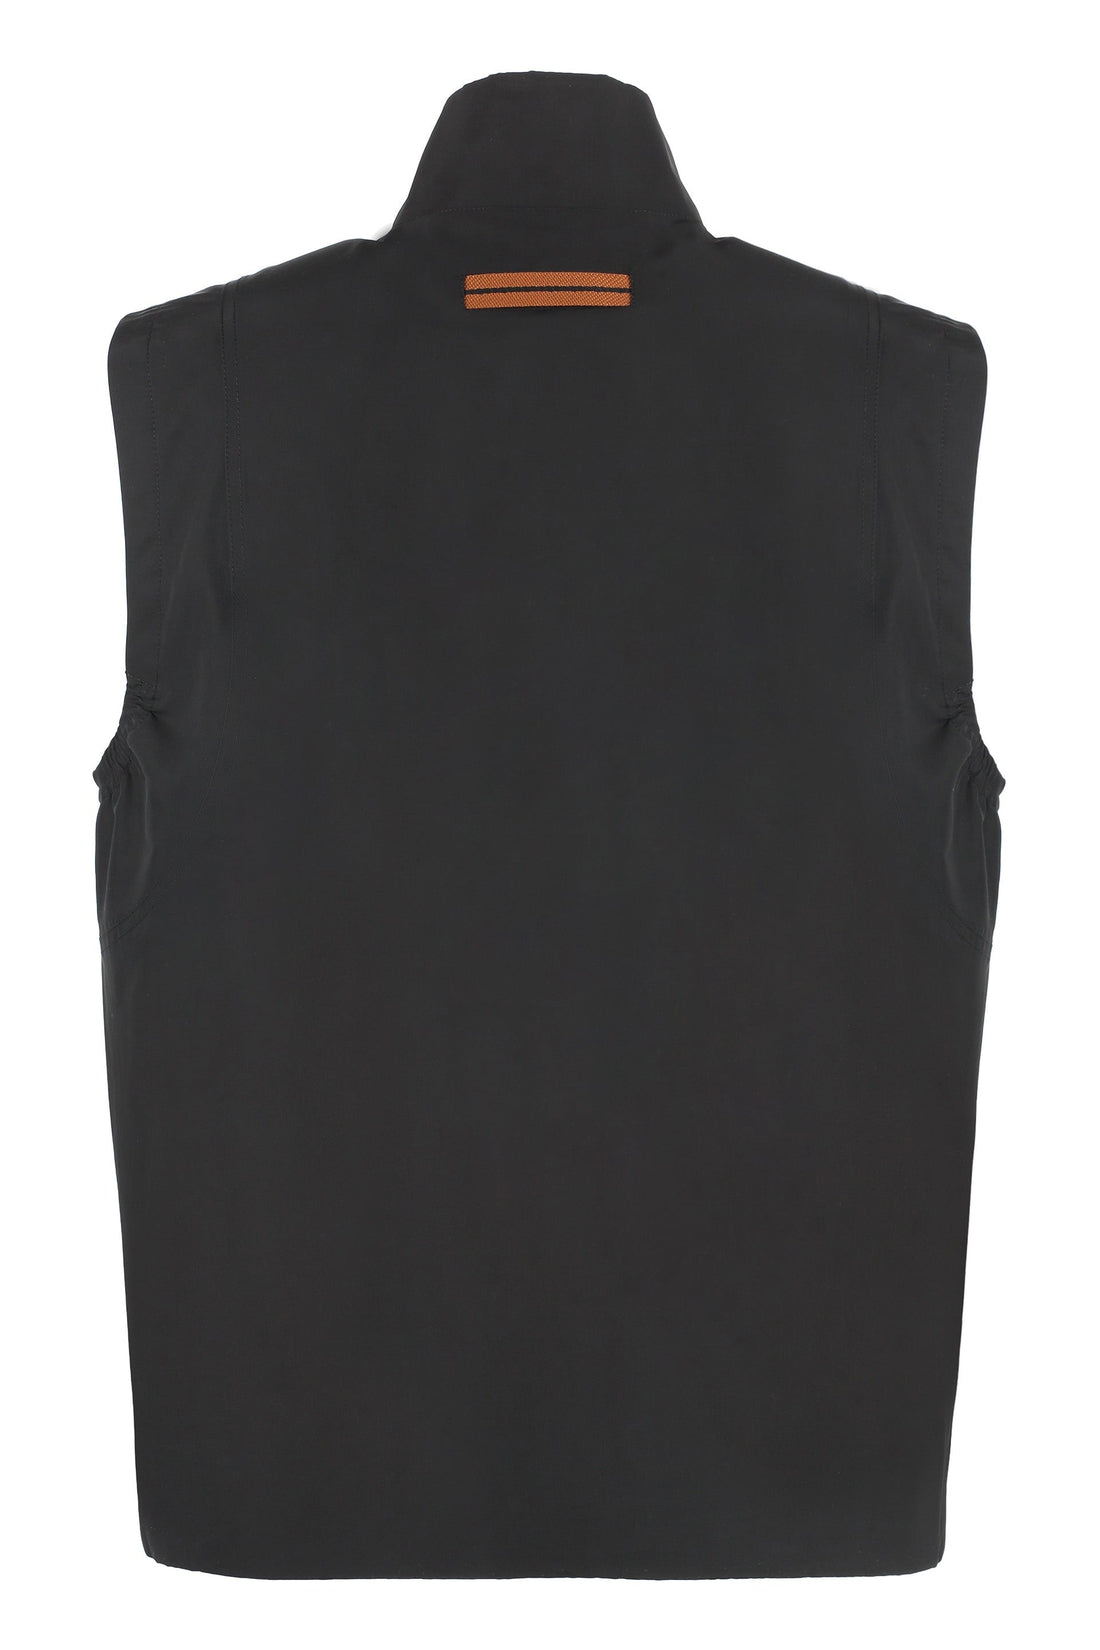 Zegna-OUTLET-SALE-Technical fabric vest-ARCHIVIST